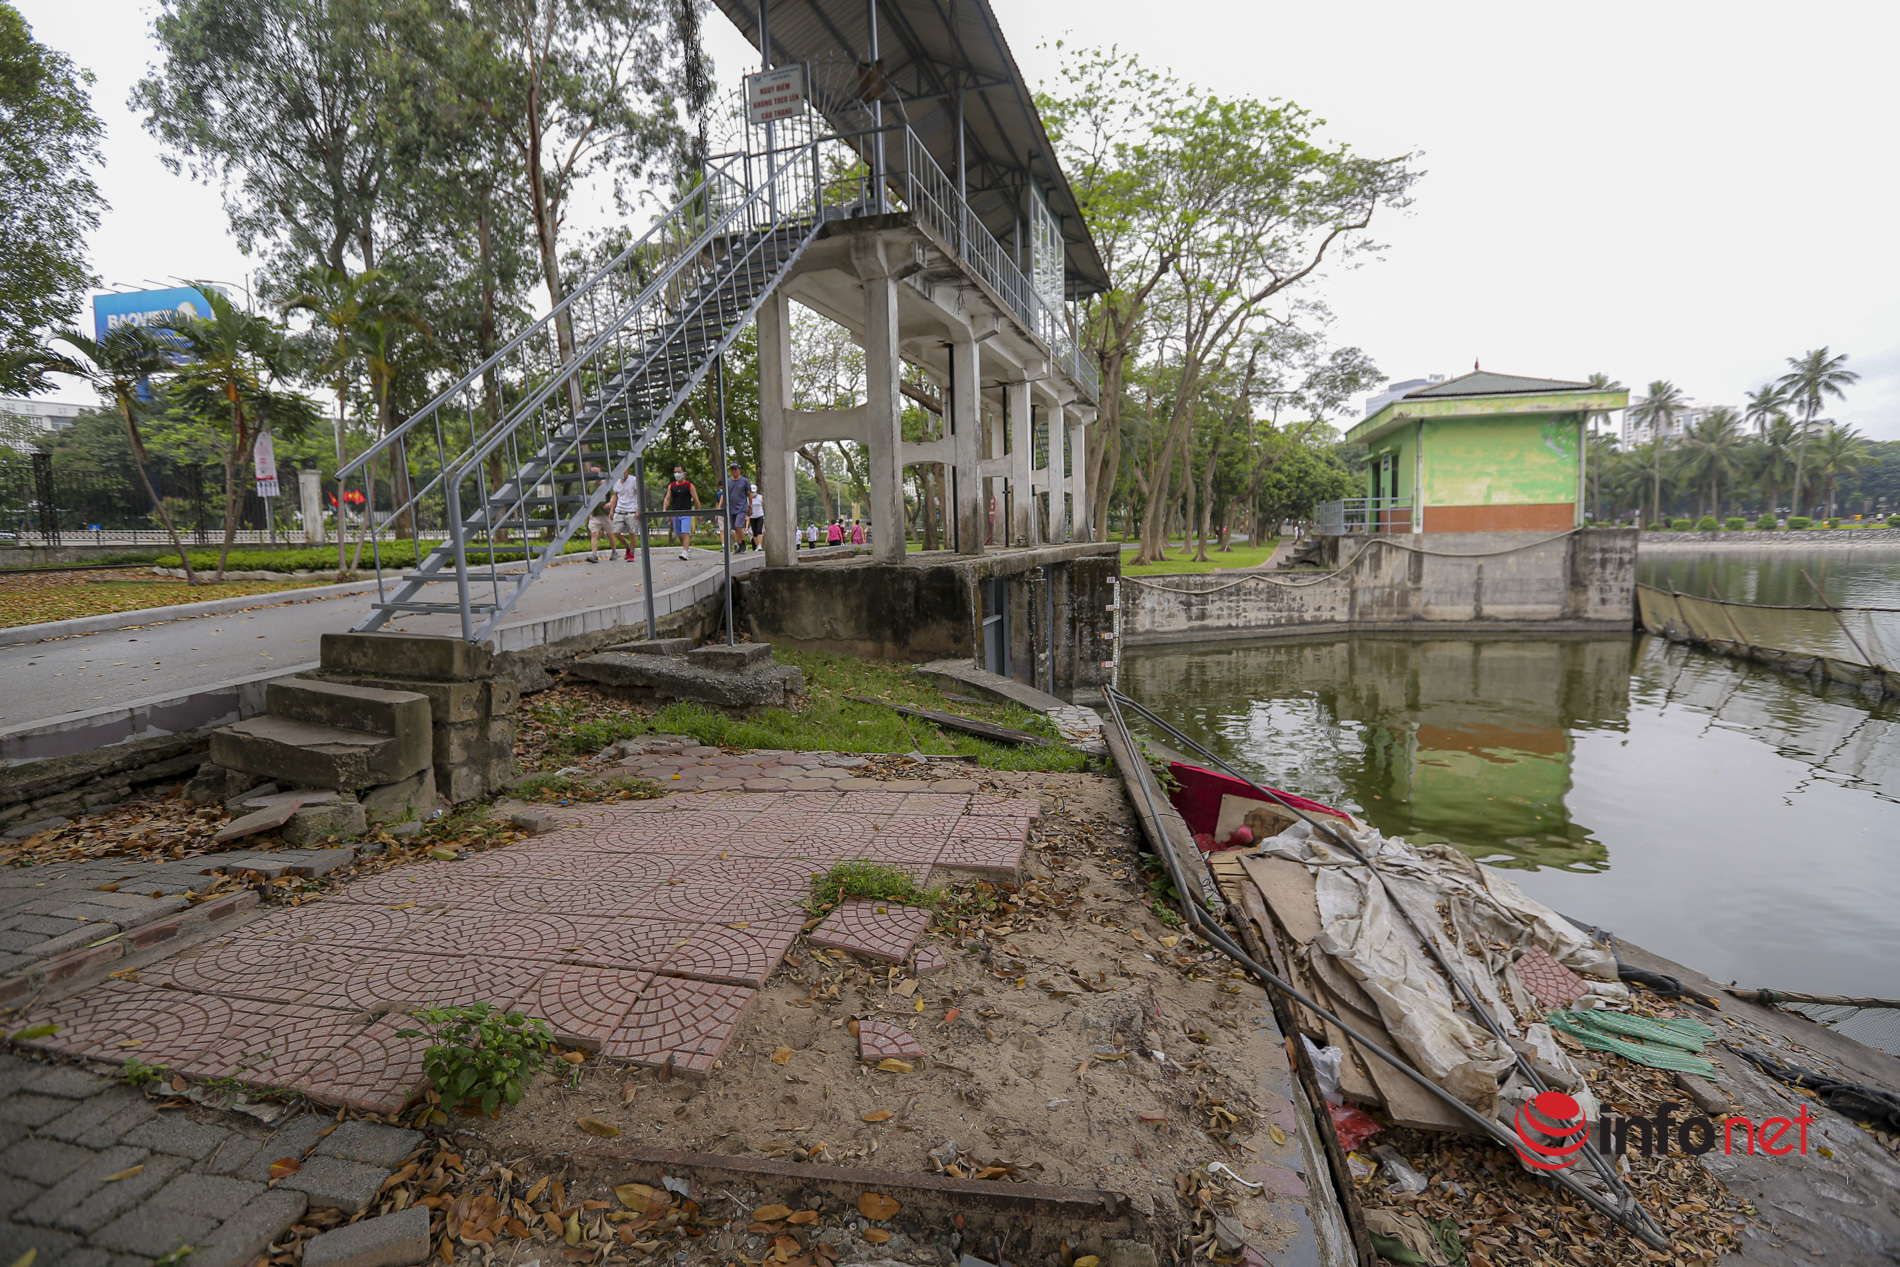 Xuống cấp nghiêm trọng, Công viên nổi tiếng ở Hà Nội thành nơi người dân vô tư bắt cá